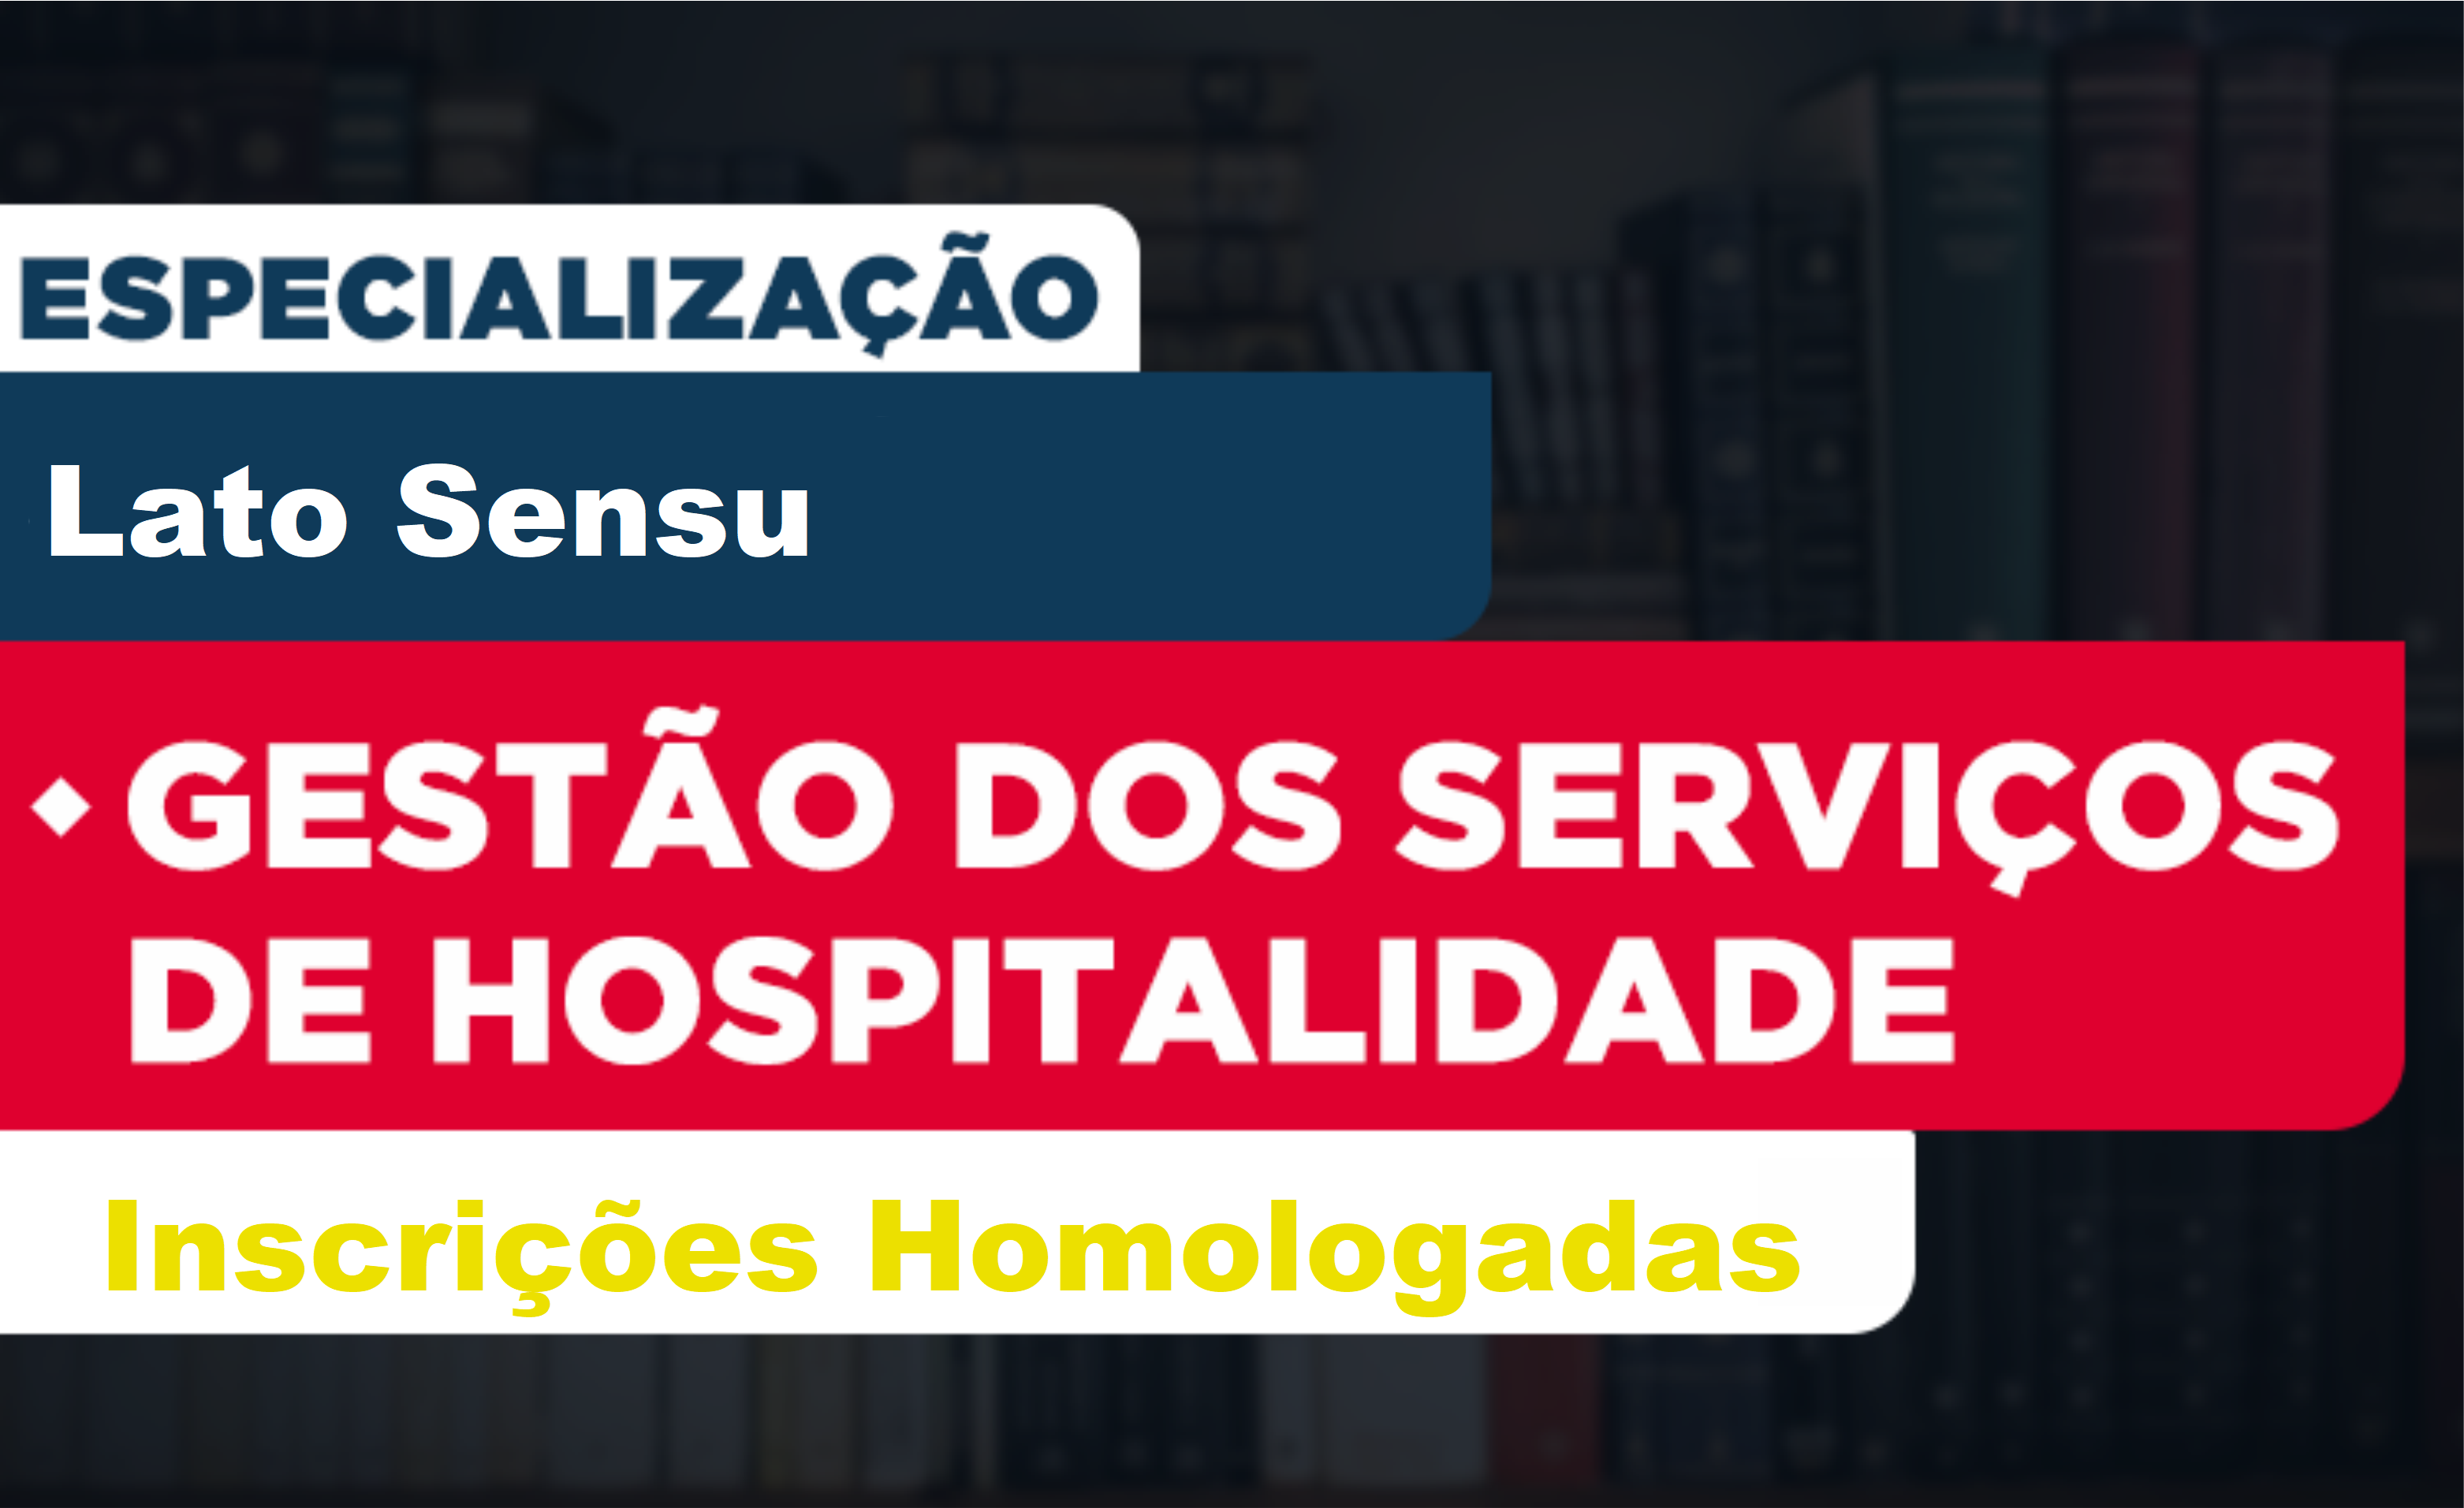 Imagem sobre a seleção da Especialização em Gestão dos Serviços de Hospitalidade, com destaque para as inscrições homologadas.